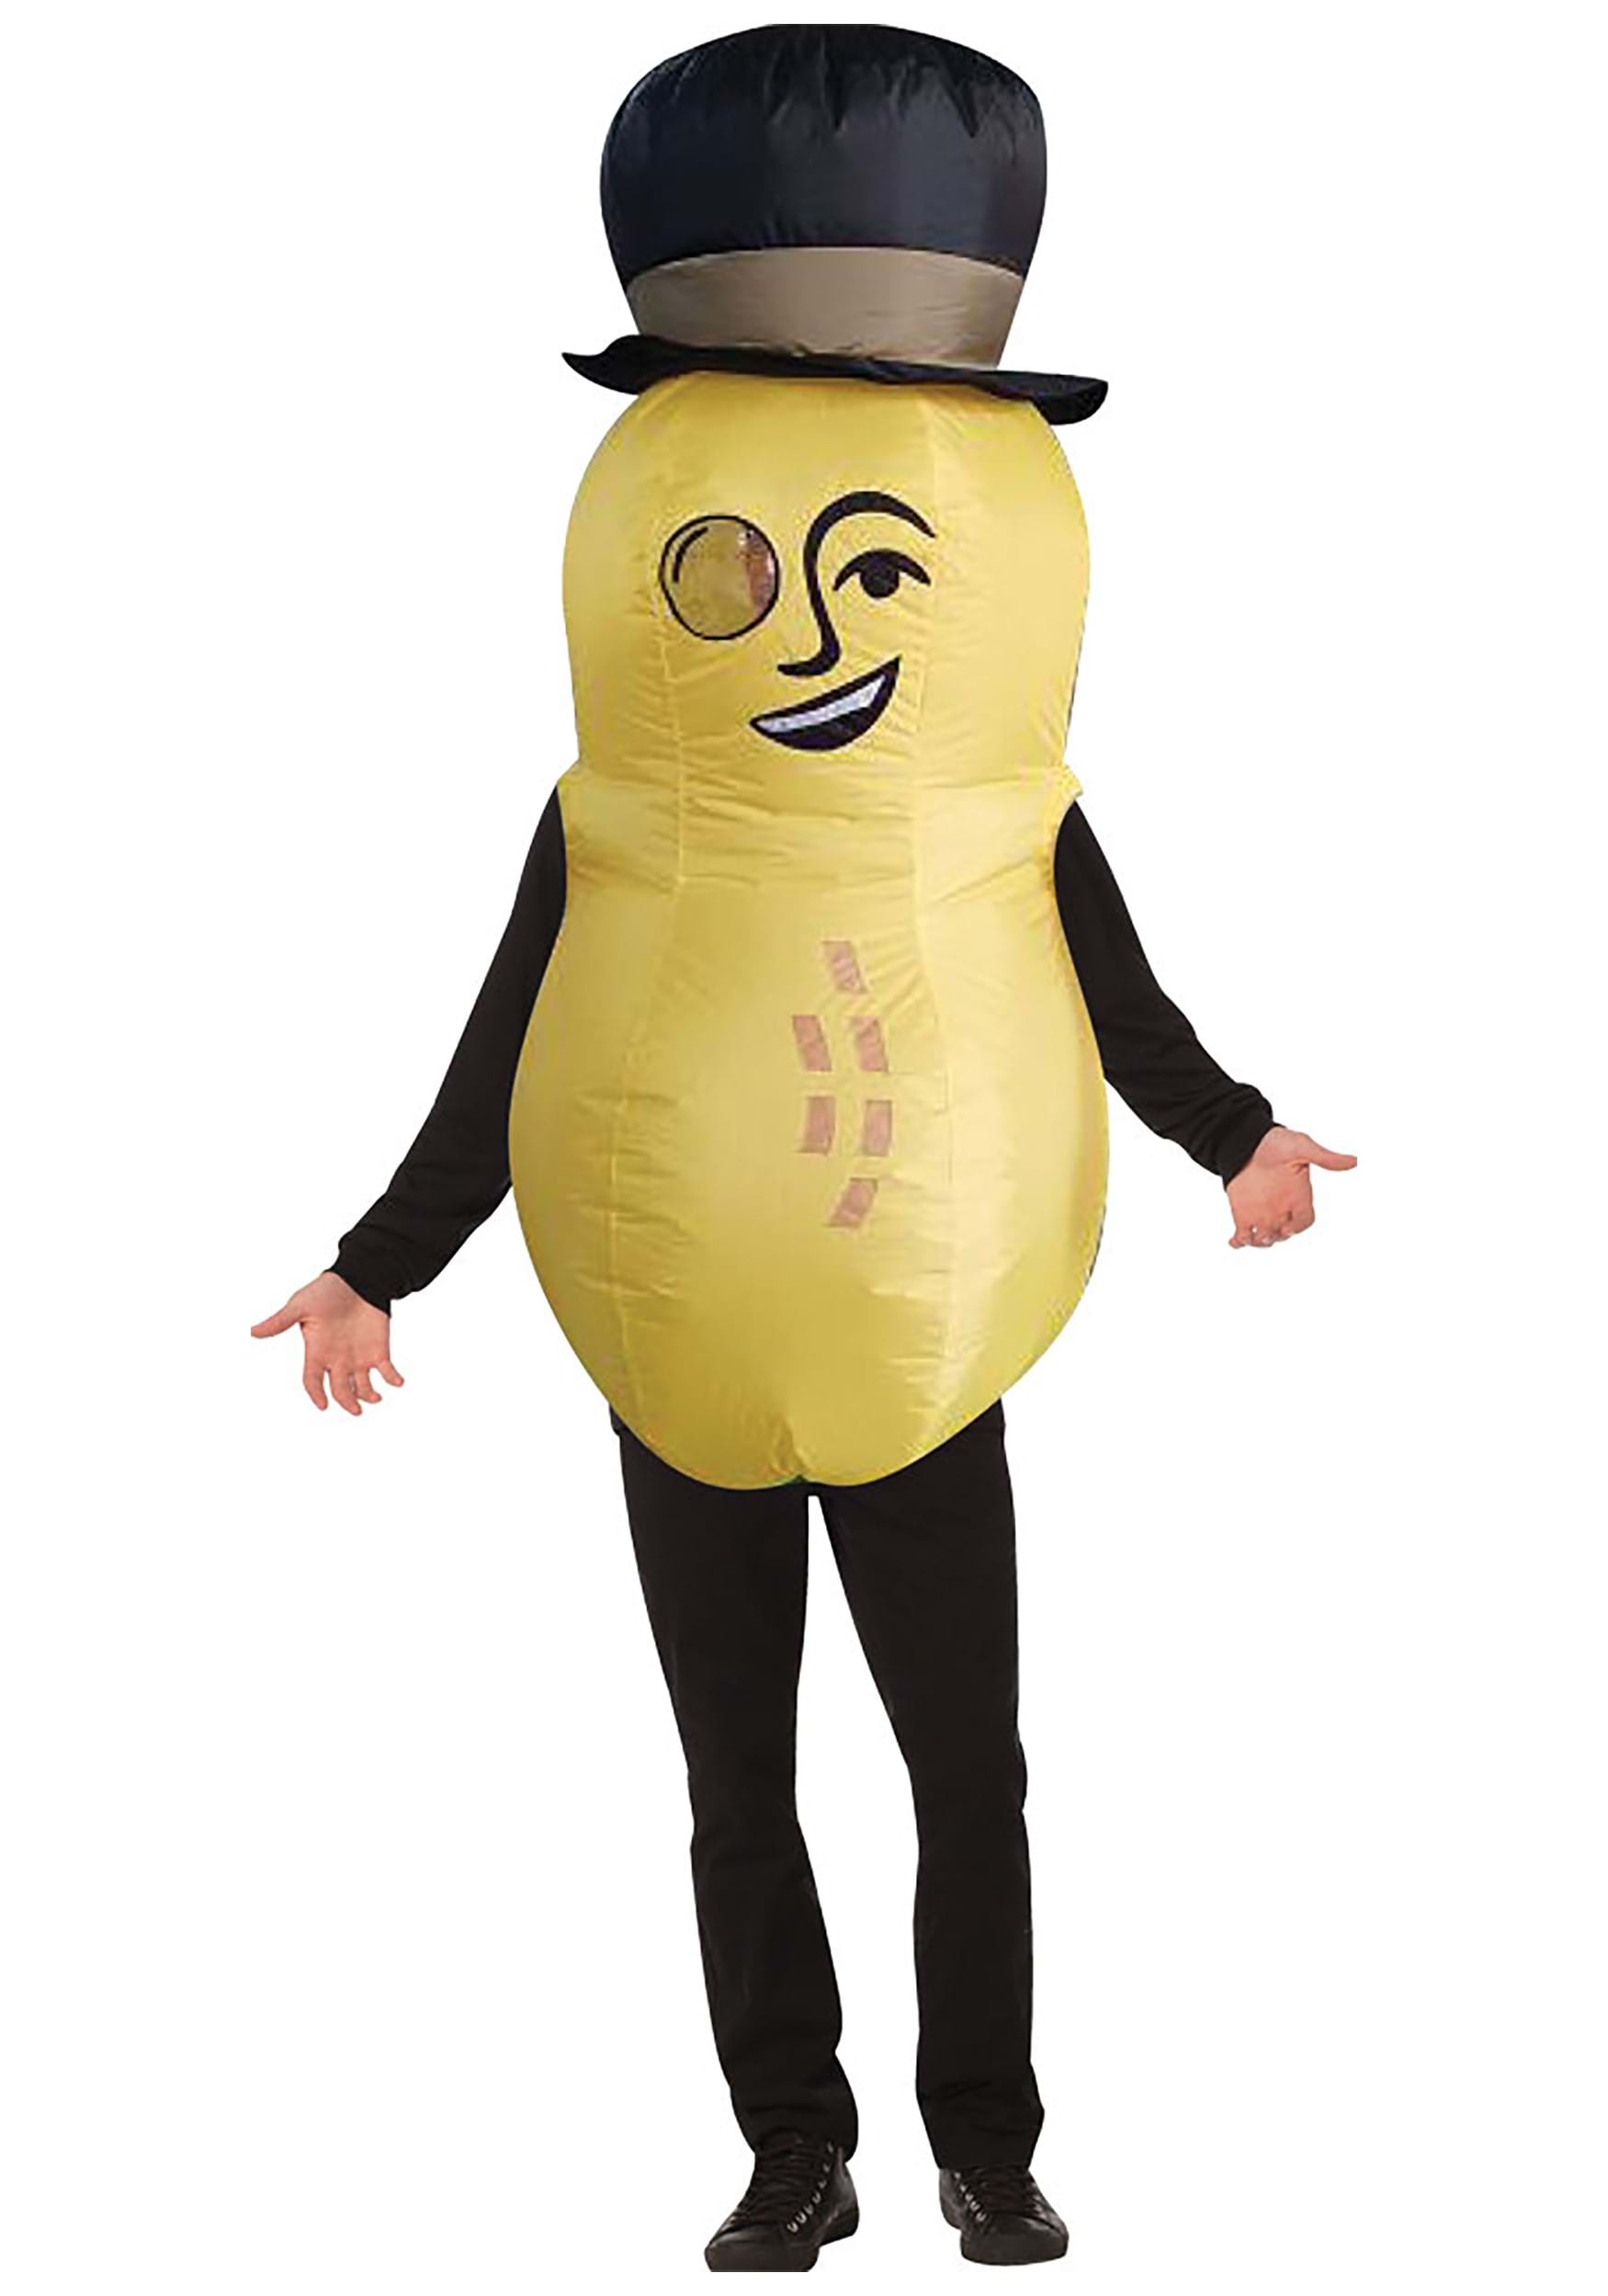 Planters - Mr. Peanut Inflatable Costume